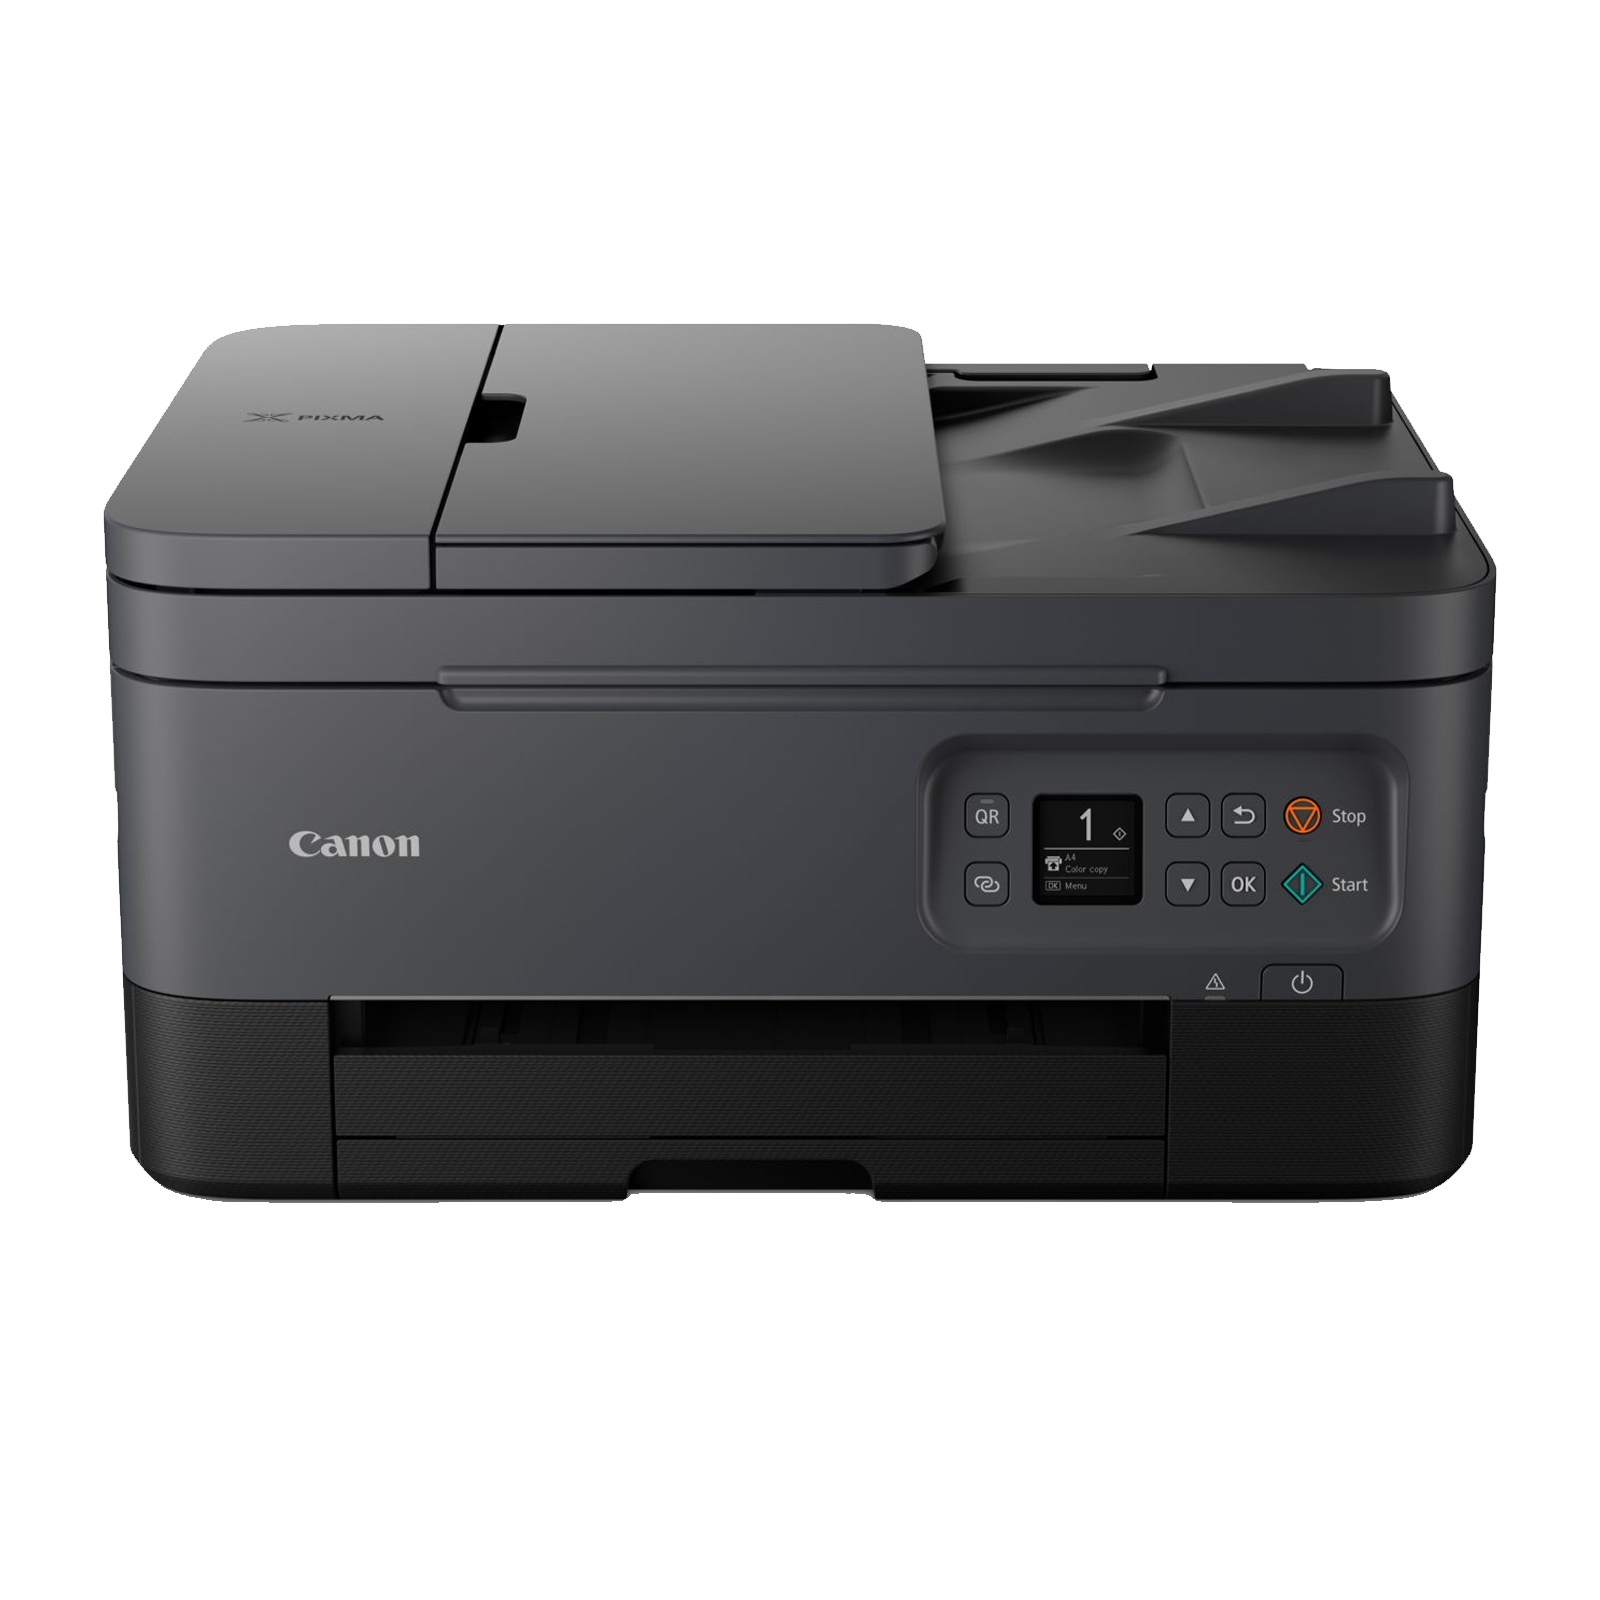 Image of Canon PIXMA TS7450a Three-in-One Wireless Wi-Fi Printer - Black